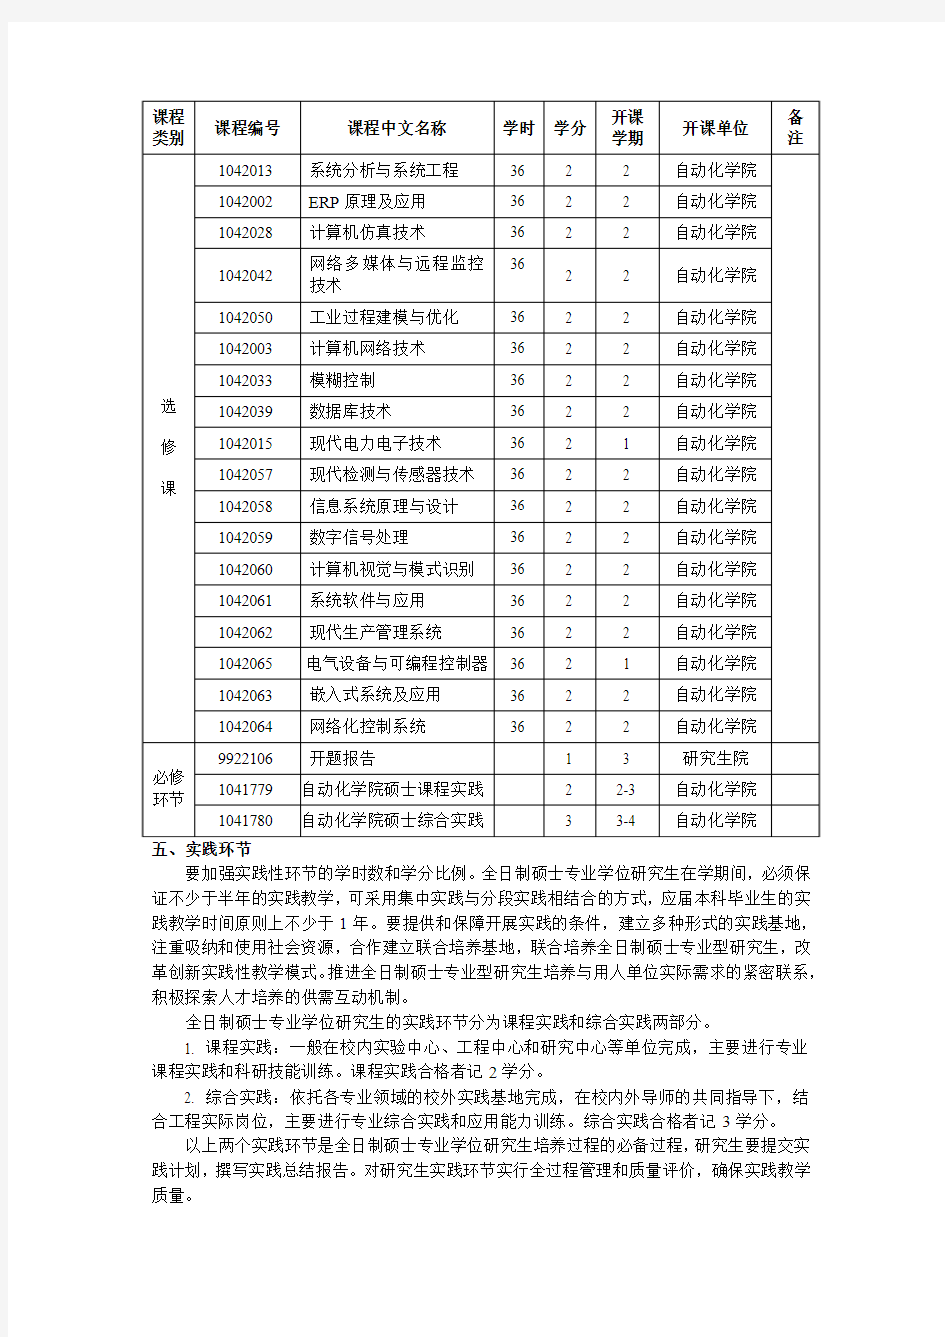 武汉理工大学控制工程专业学位研究生培养方案